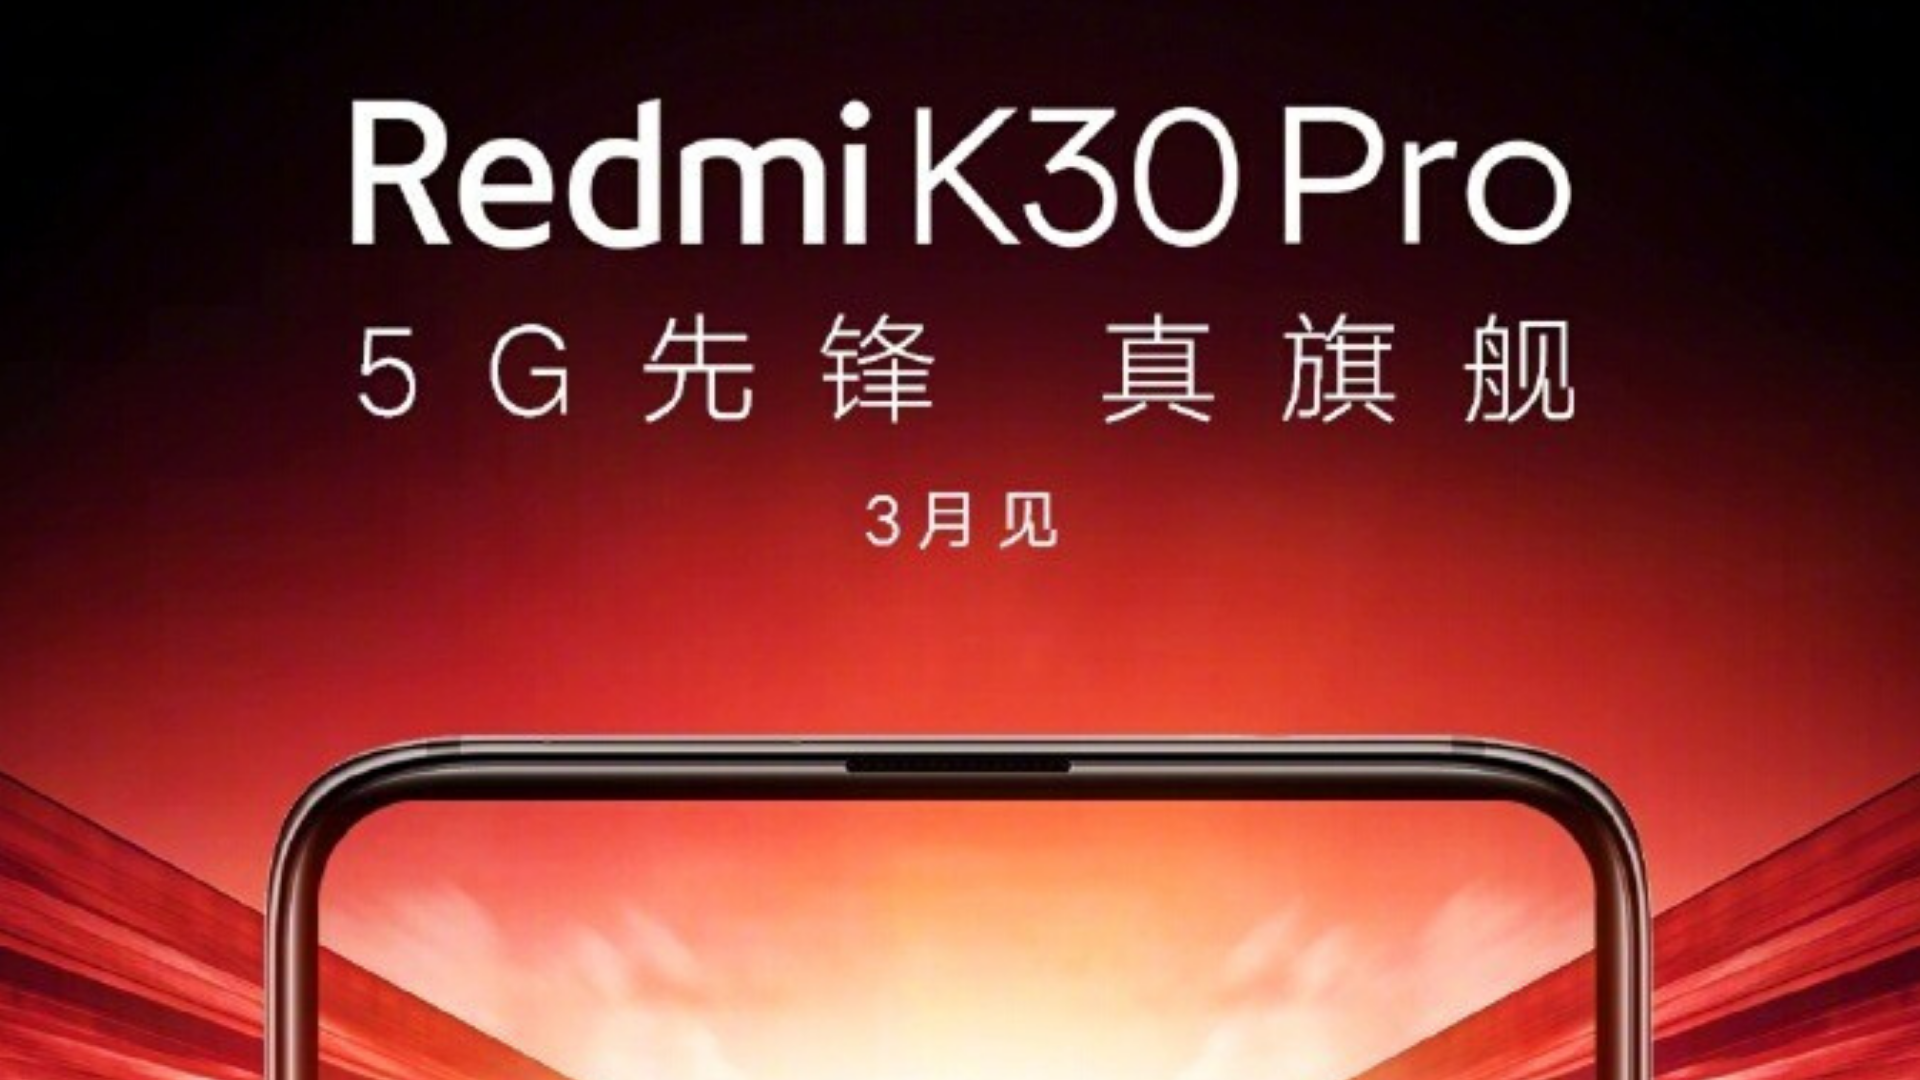 Xiaomi redmi k30 pro Price